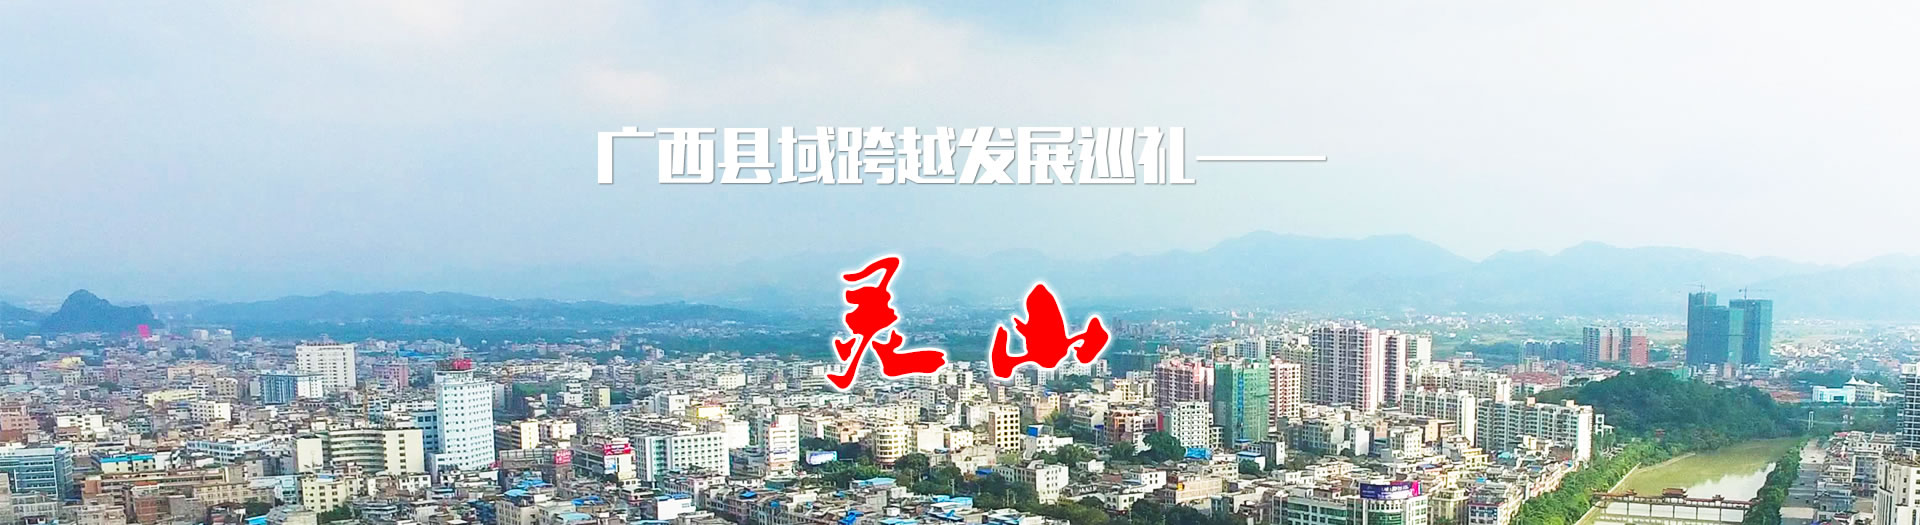 广西县域跨越发展巡礼——灵山